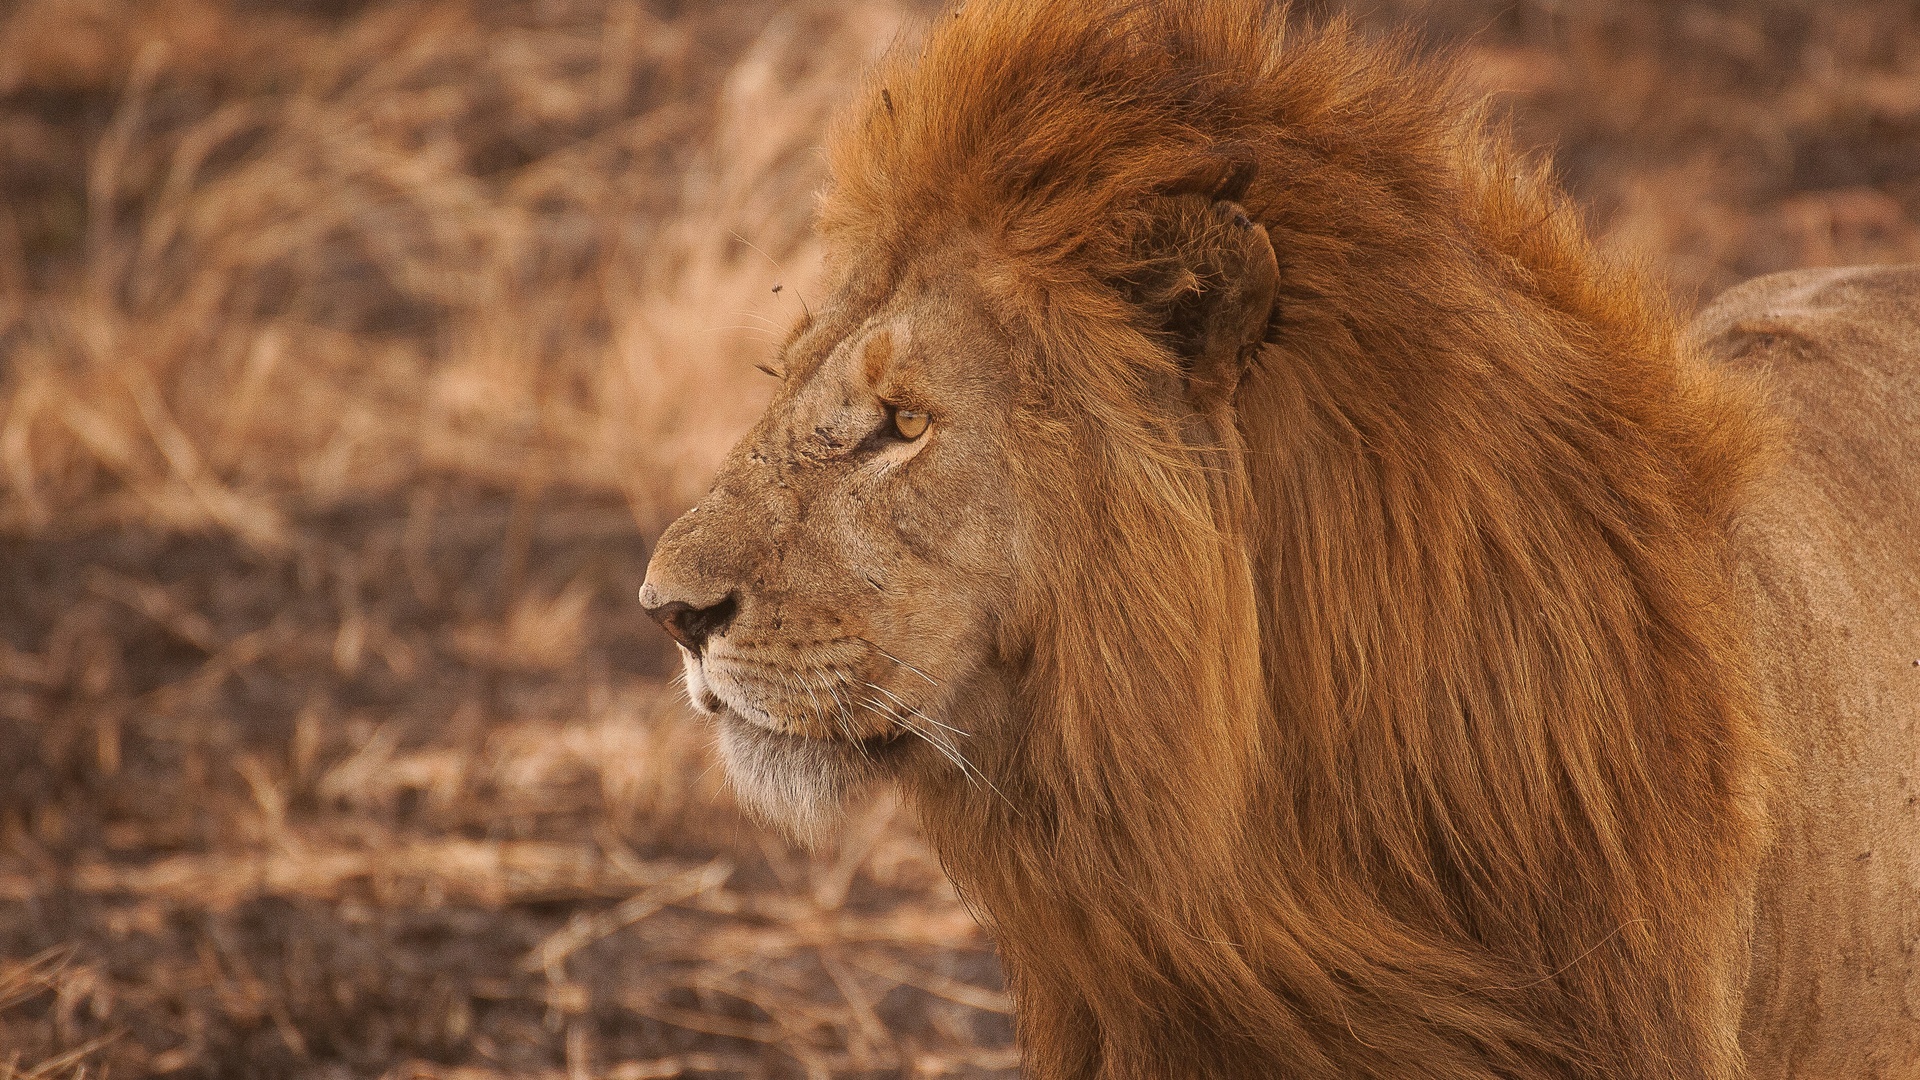 非洲野生动物保护手记你看过吗？ - 非洲野保日记百科